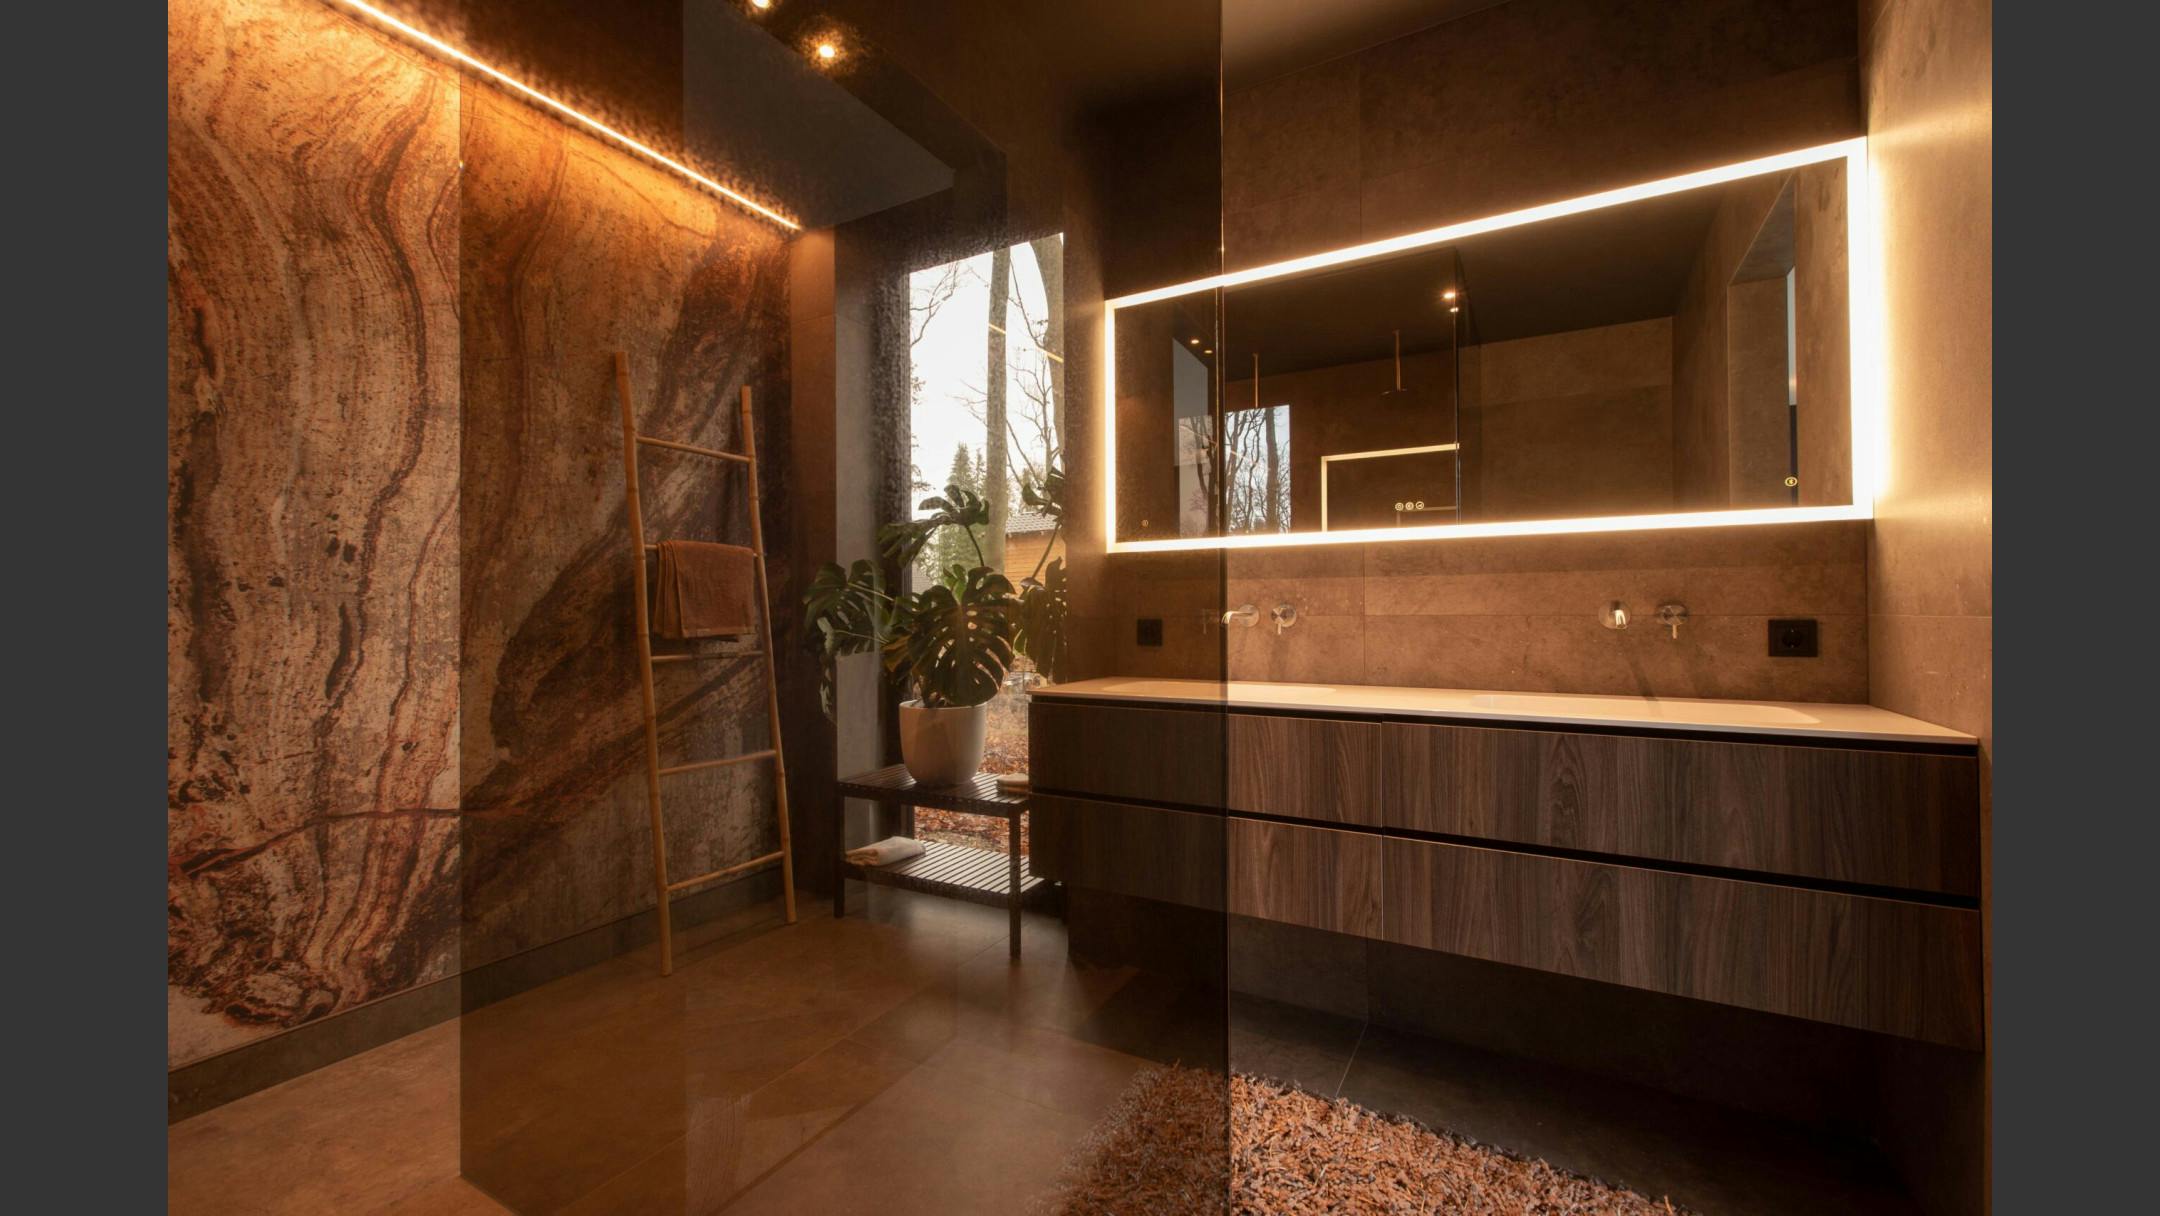 Verlichting achter de spiegel van een badkamer geeft een luxe uitstraling